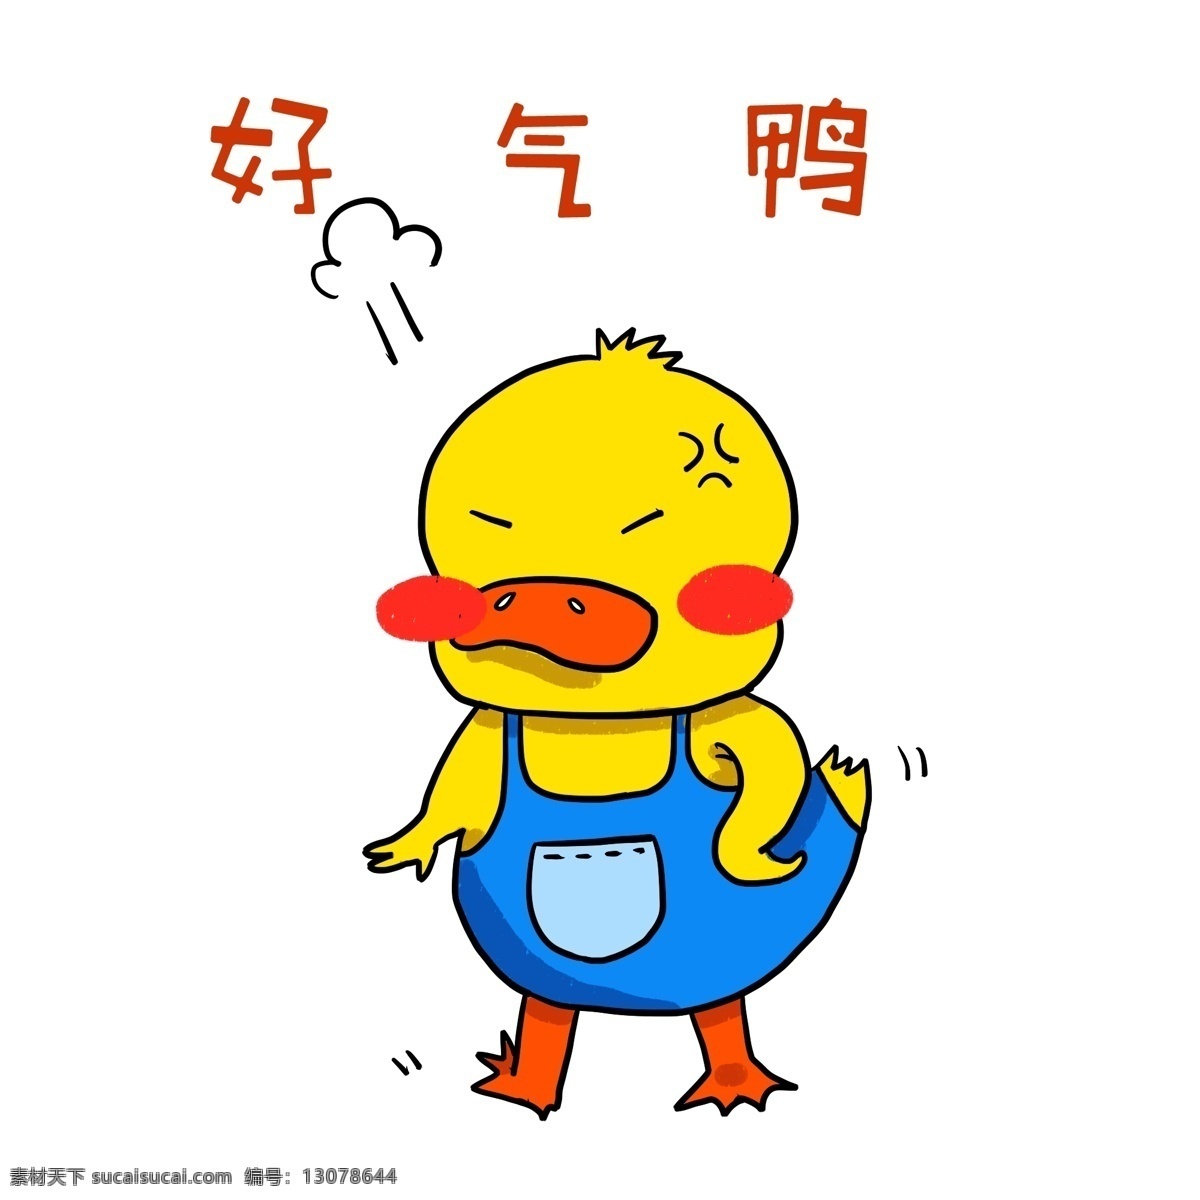 好气 鸭 小 鸭子 插画 网络用语 黄色的小鸭子 手绘小鸭子 可爱的小鸭子 生气的小鸭子 好气鸭 漂亮的小鸭子